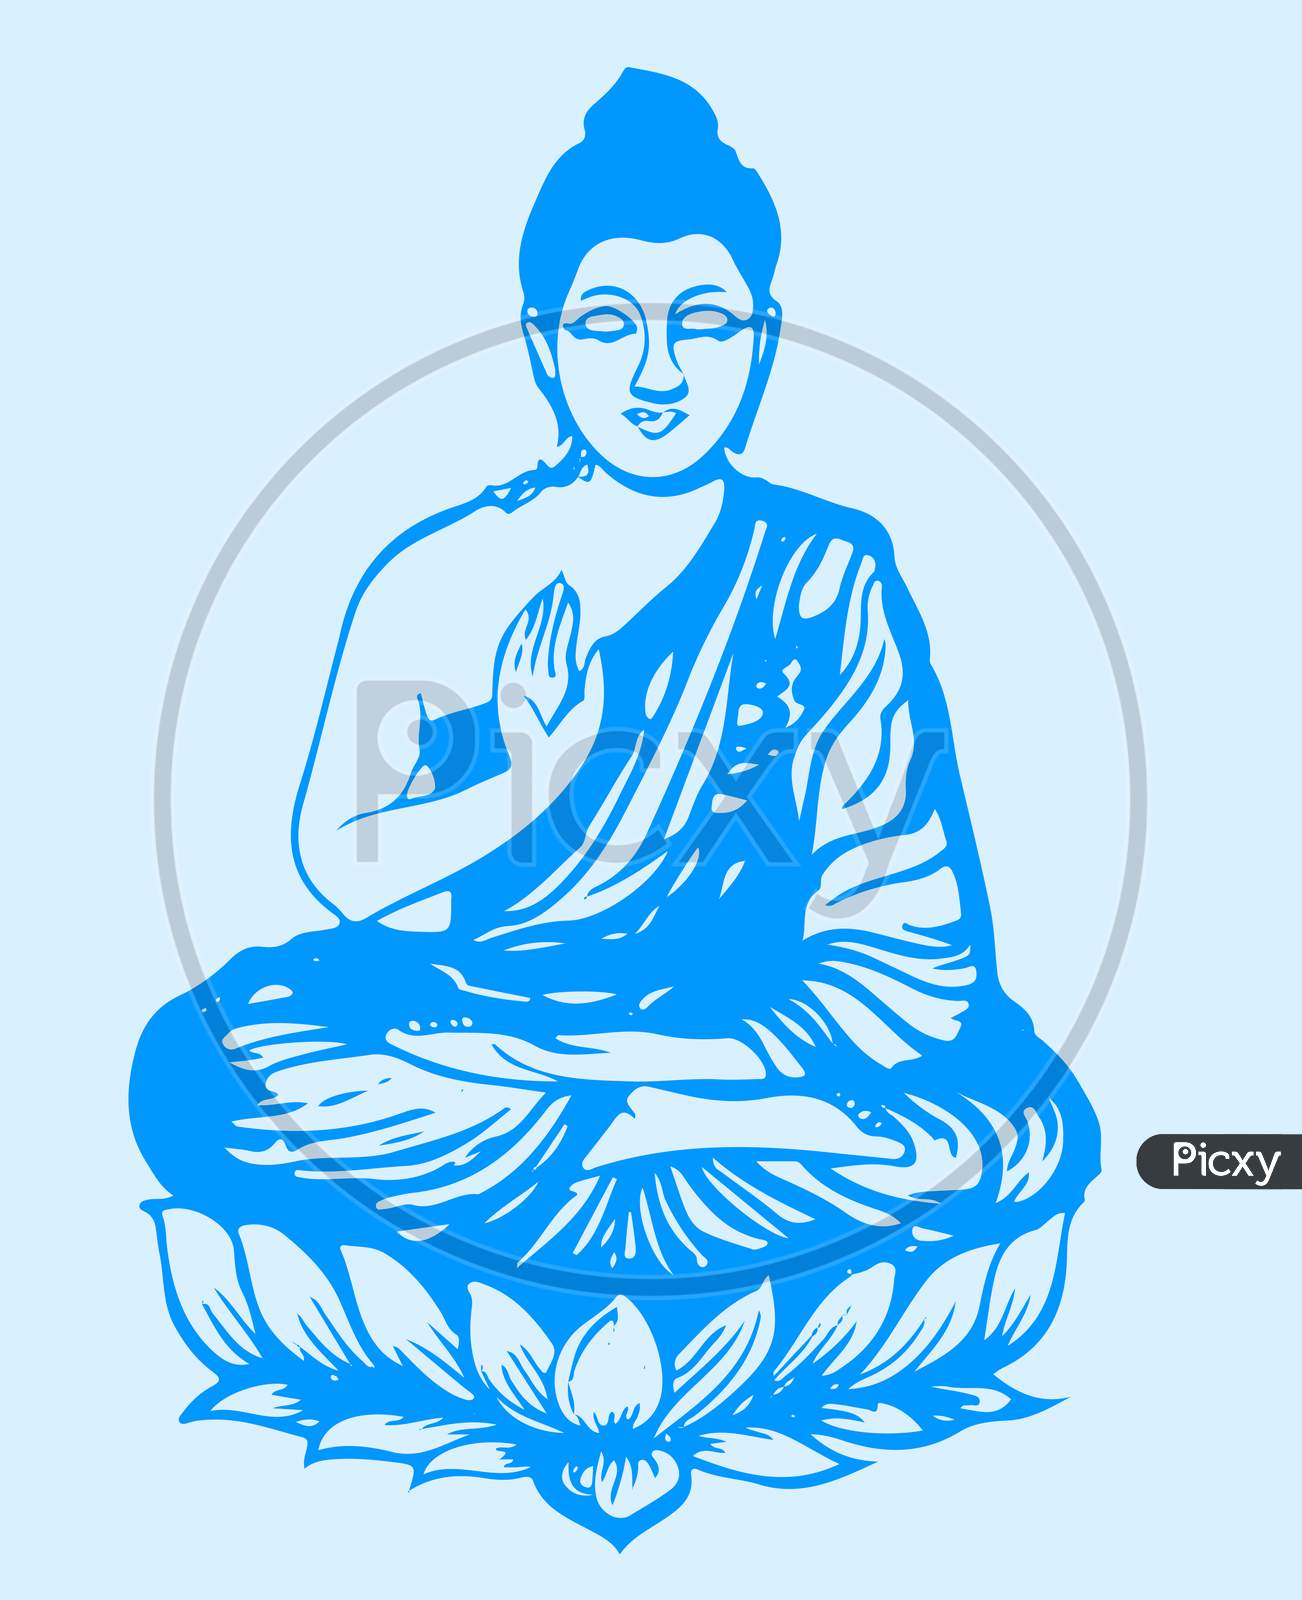 Gautam Buddha Drawings for Sale - Fine Art America-saigonsouth.com.vn